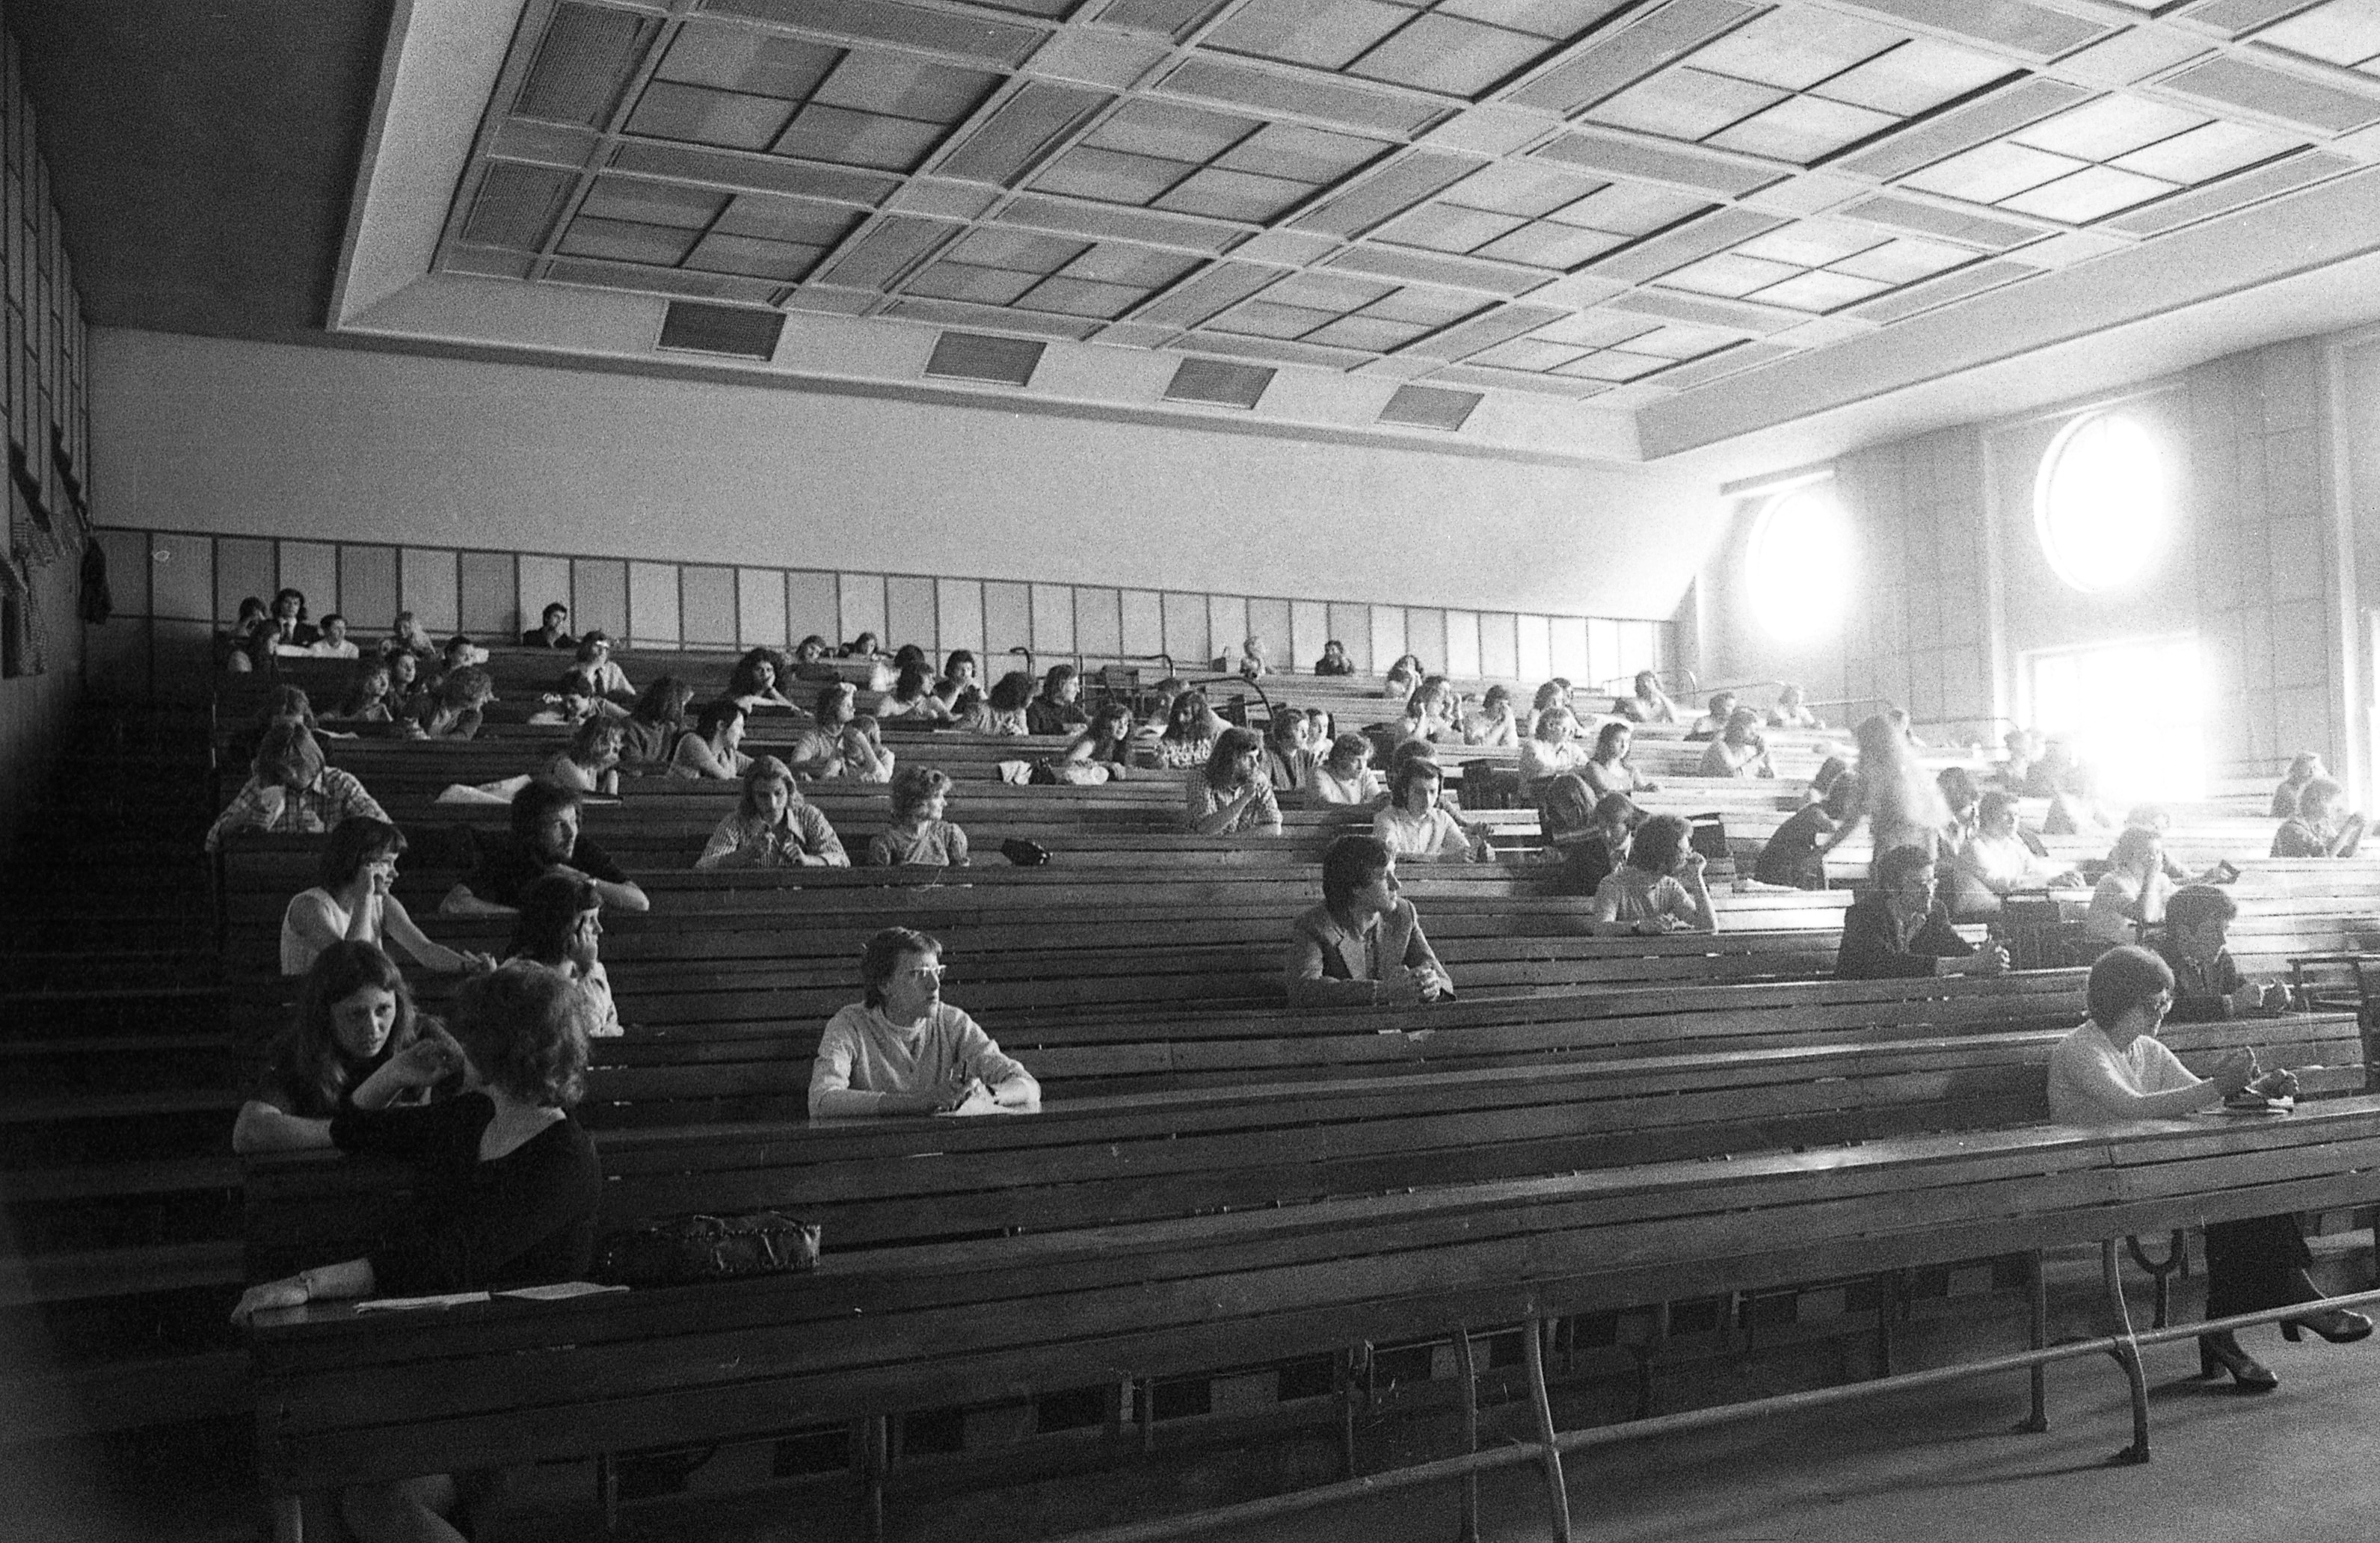 Auditorium in the Eötvös Loránd University of Sciences, 1974.